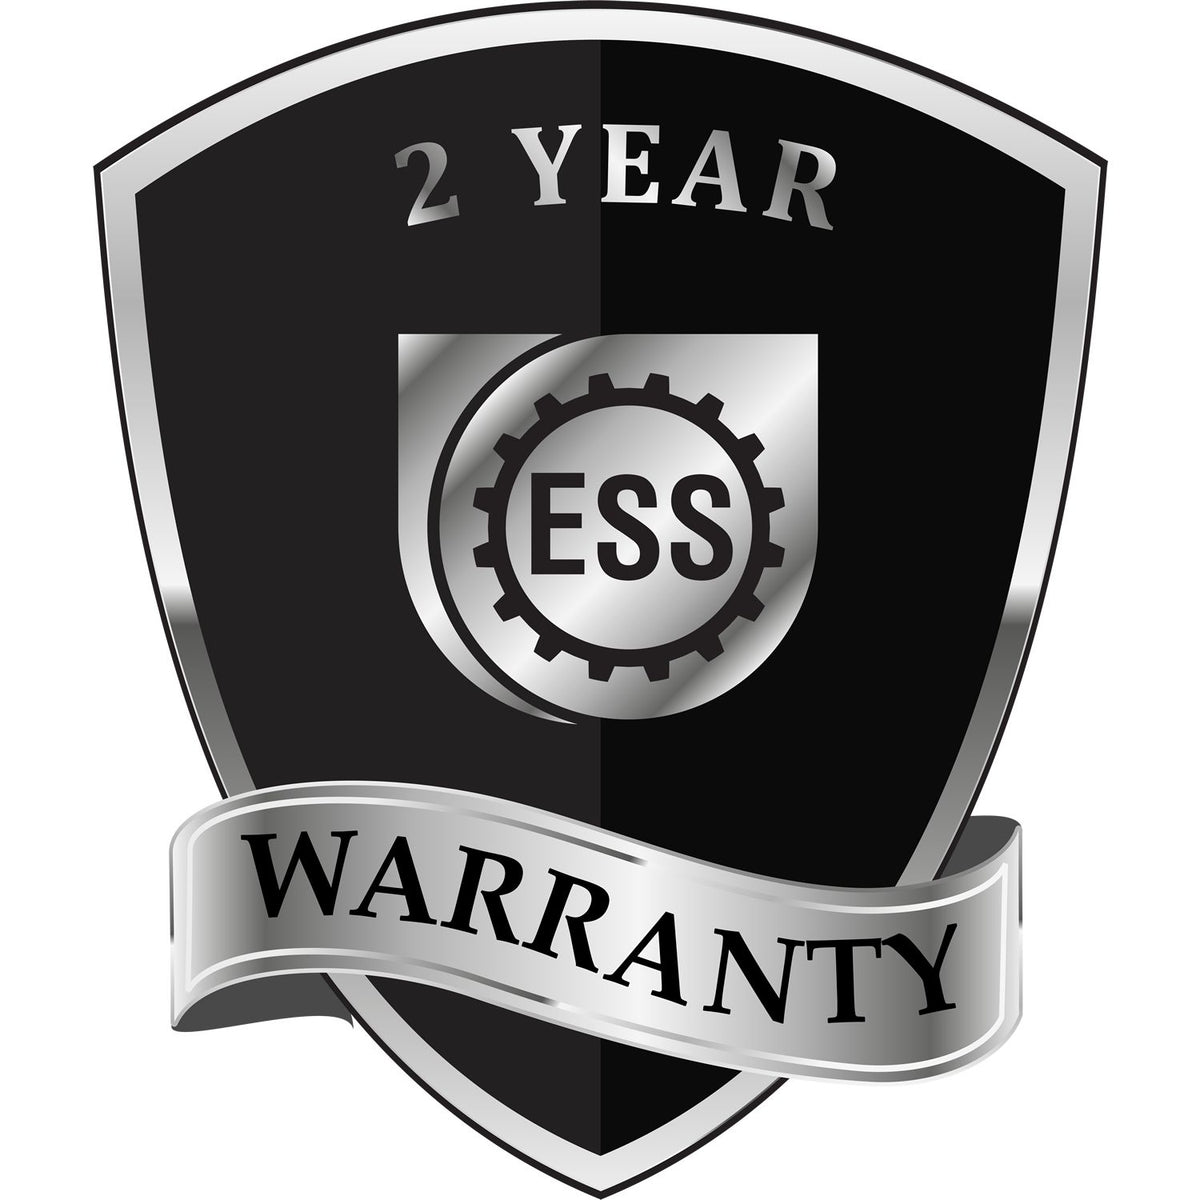 A black and silver badge or emblem showing warranty information for the Hybrid South Dakota Land Surveyor Seal